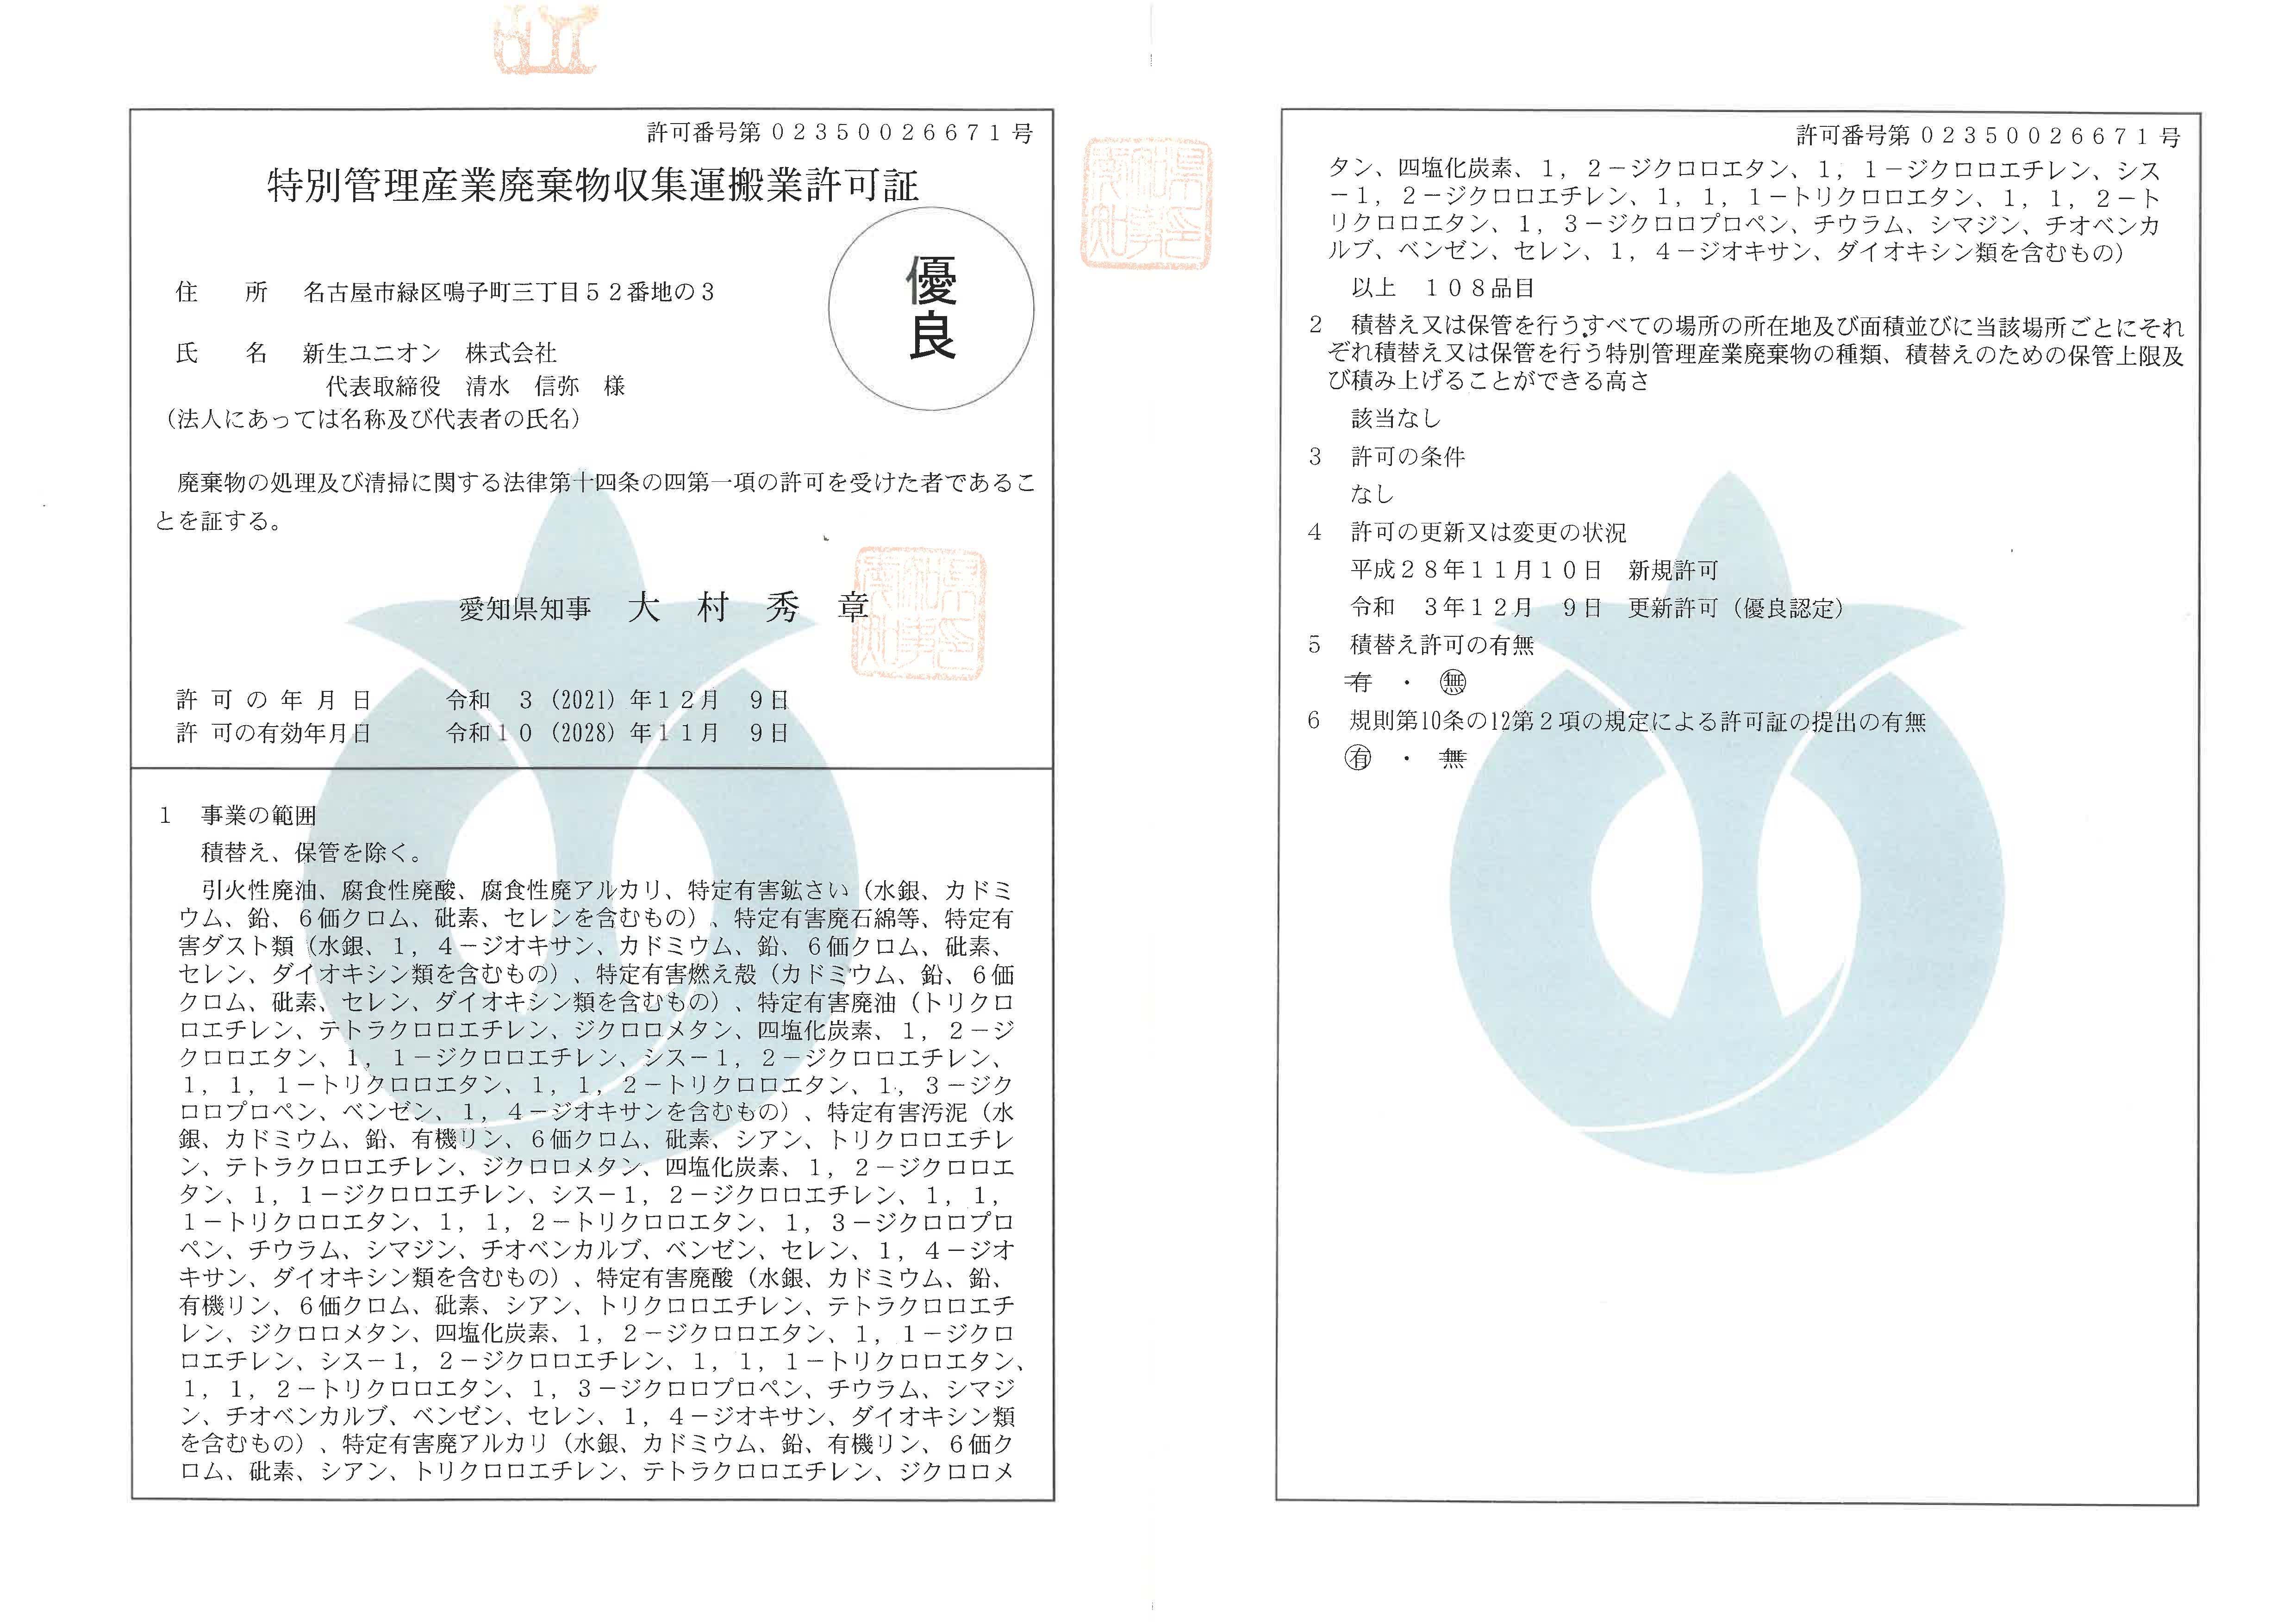 愛知県特別産業廃棄物収集運搬業許可証